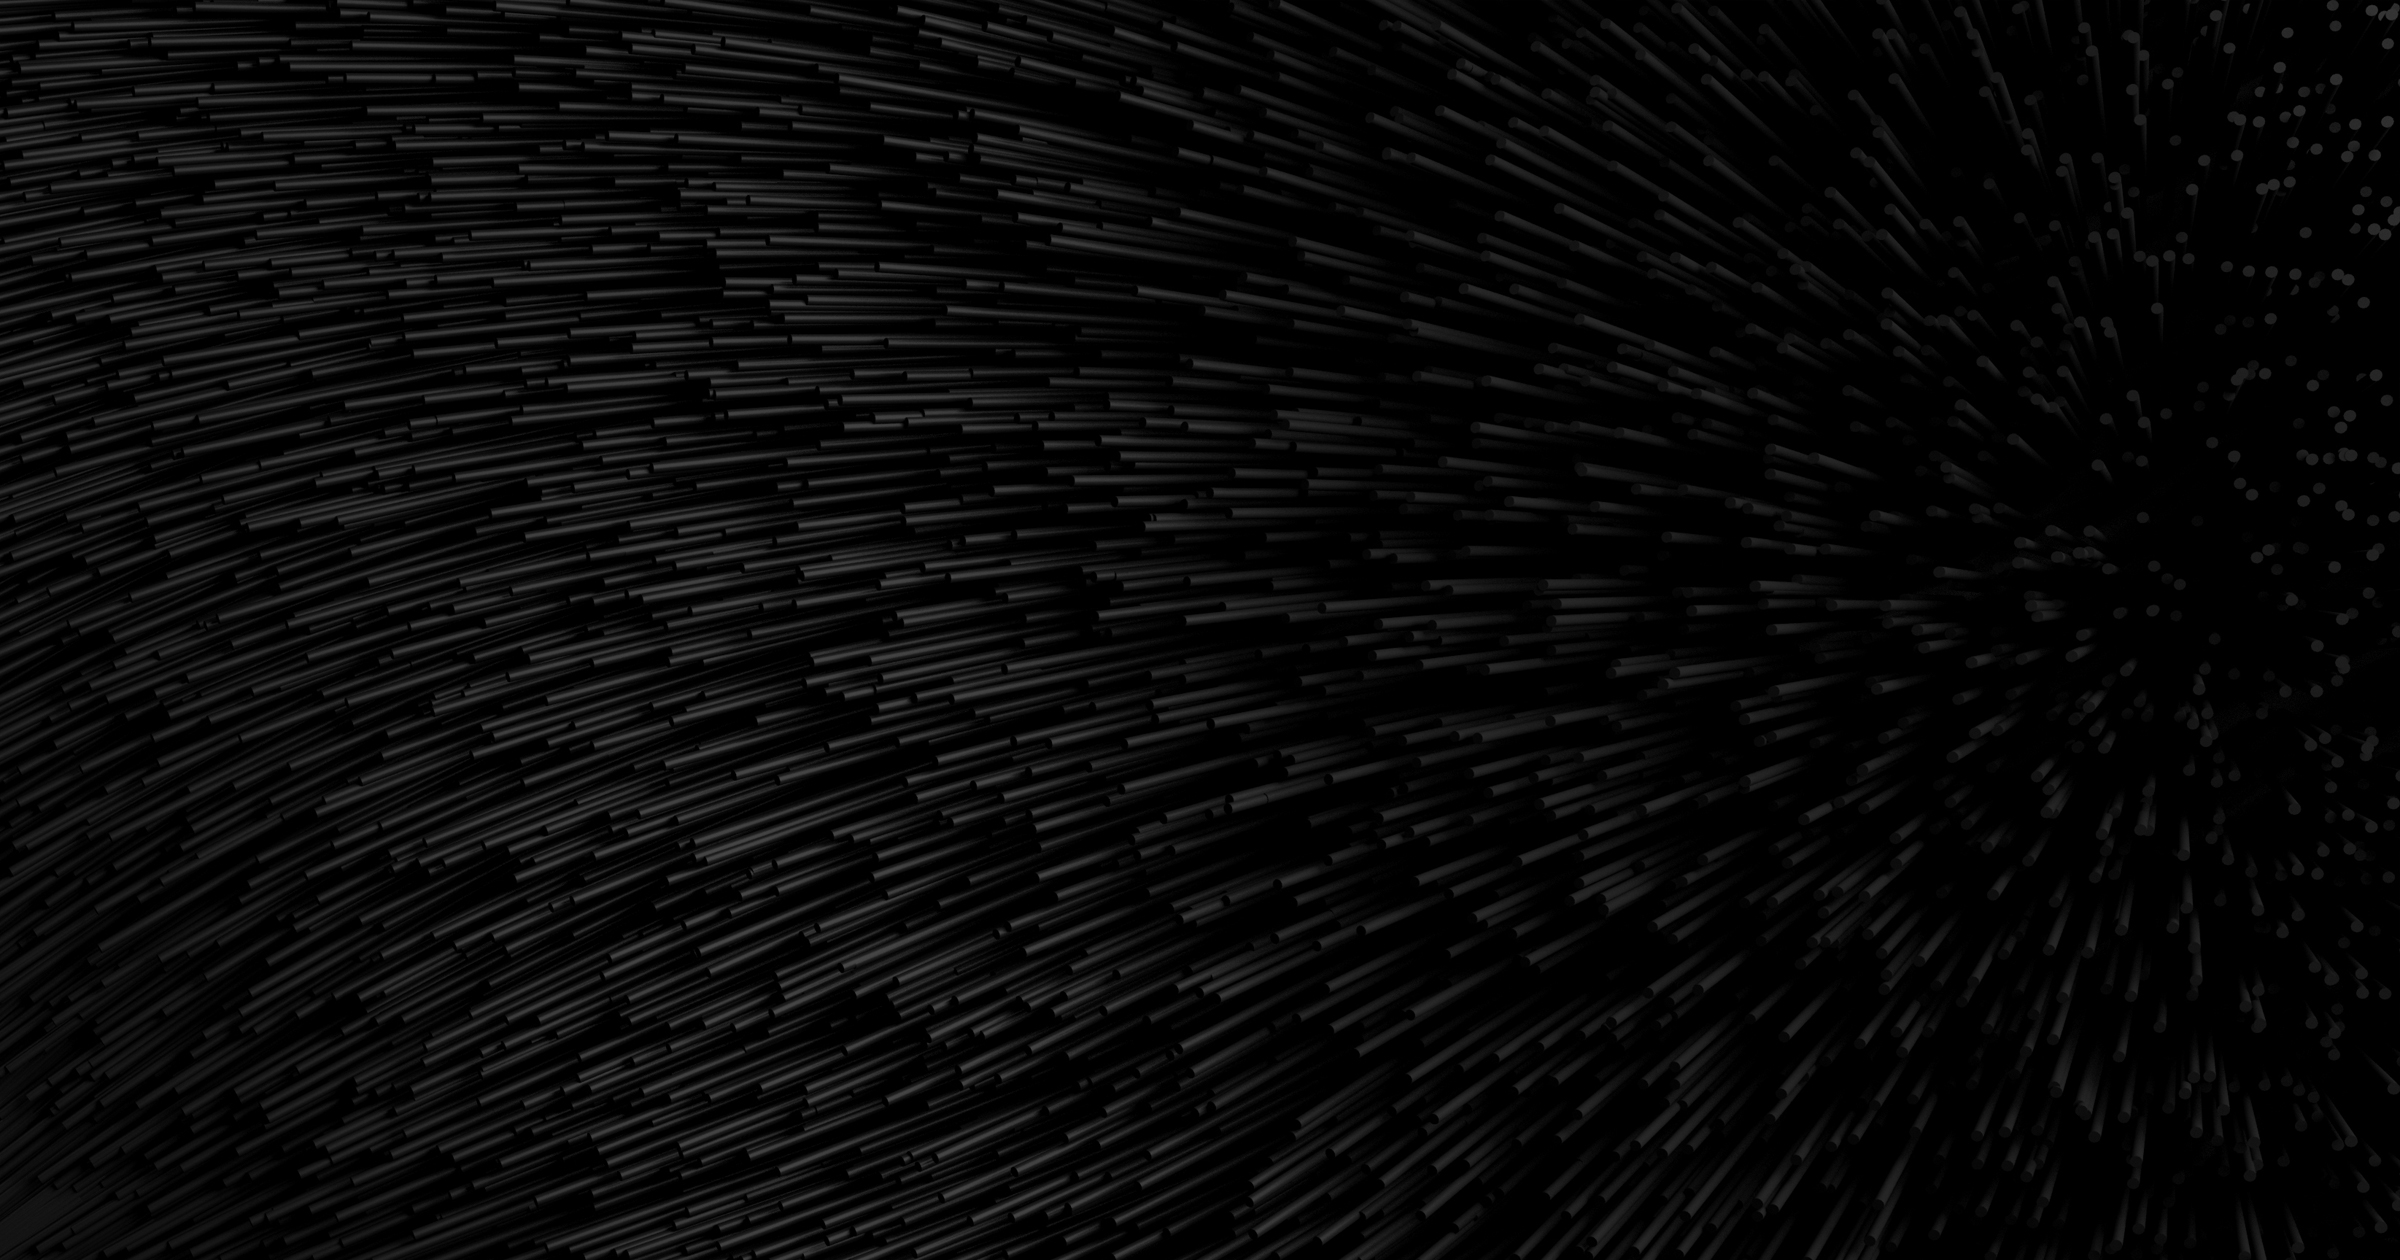 Bộ sưu tập hình nền đen BLACK của Jean Marc Denis: Jean Marc Denis - một trong những nhiếp ảnh gia hàng đầu của thời đại này đã cho ra đời bộ sưu tập hình nền đen BLACK ấn tượng và bí ẩn. Không chỉ mang đến cho bạn những hình ảnh tuyệt đẹp, sản phẩm còn đem lại cảm giác tĩnh lặng và sự thăng hoa tinh thần.